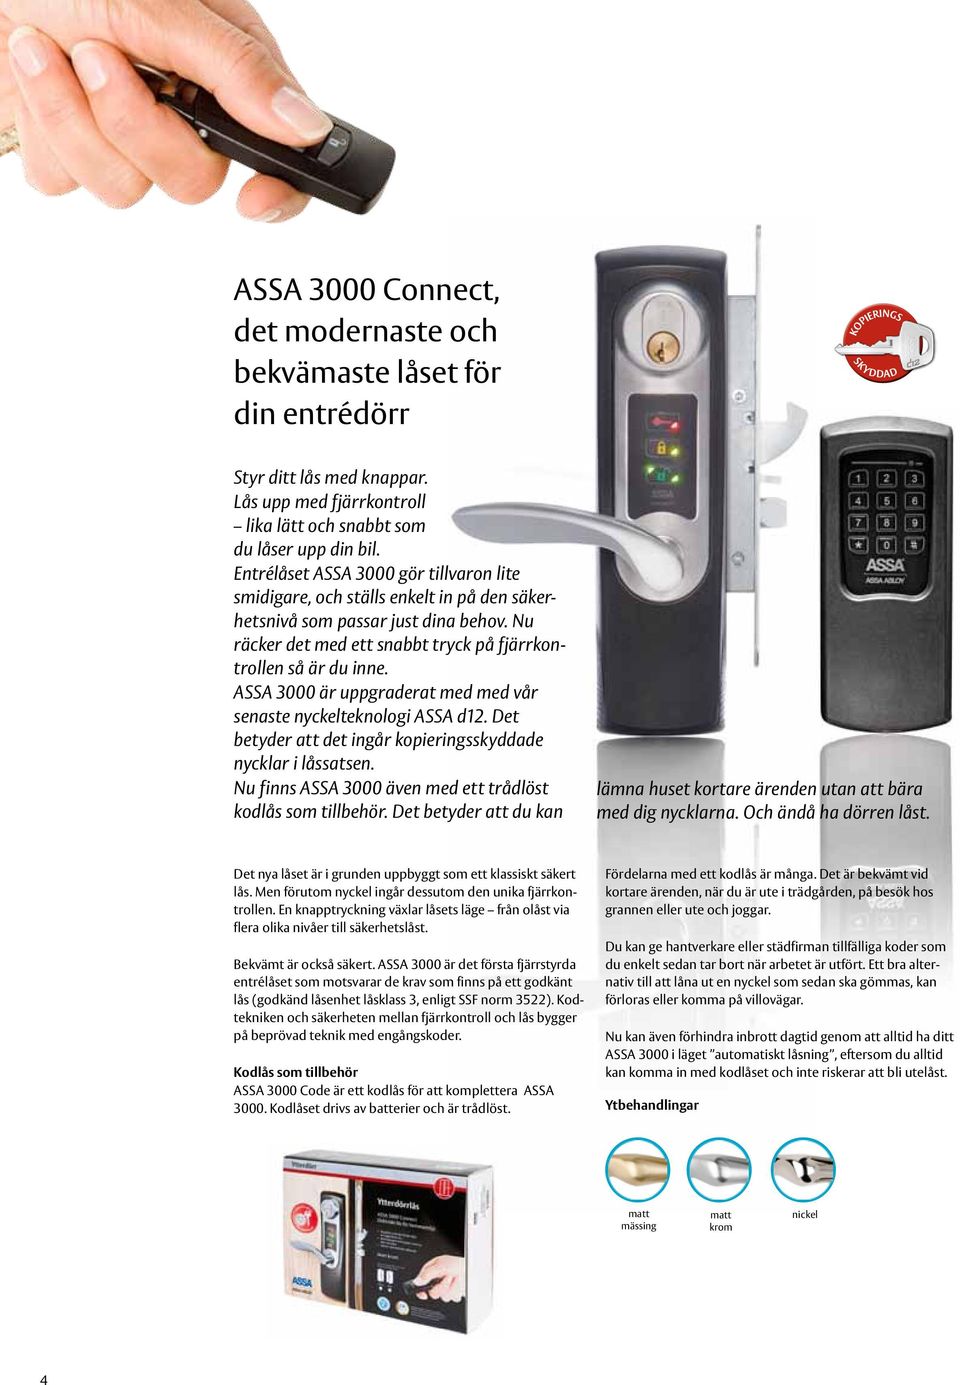 ASSA 3000 är uppgraderat med med vår senaste nyckelteknologi ASSA d12. Det betyder att det ingår kopieringsskyddade nycklar i låssatsen. Nu finns ASSA 3000 även med ett trådlöst kodlås som tillbehör.